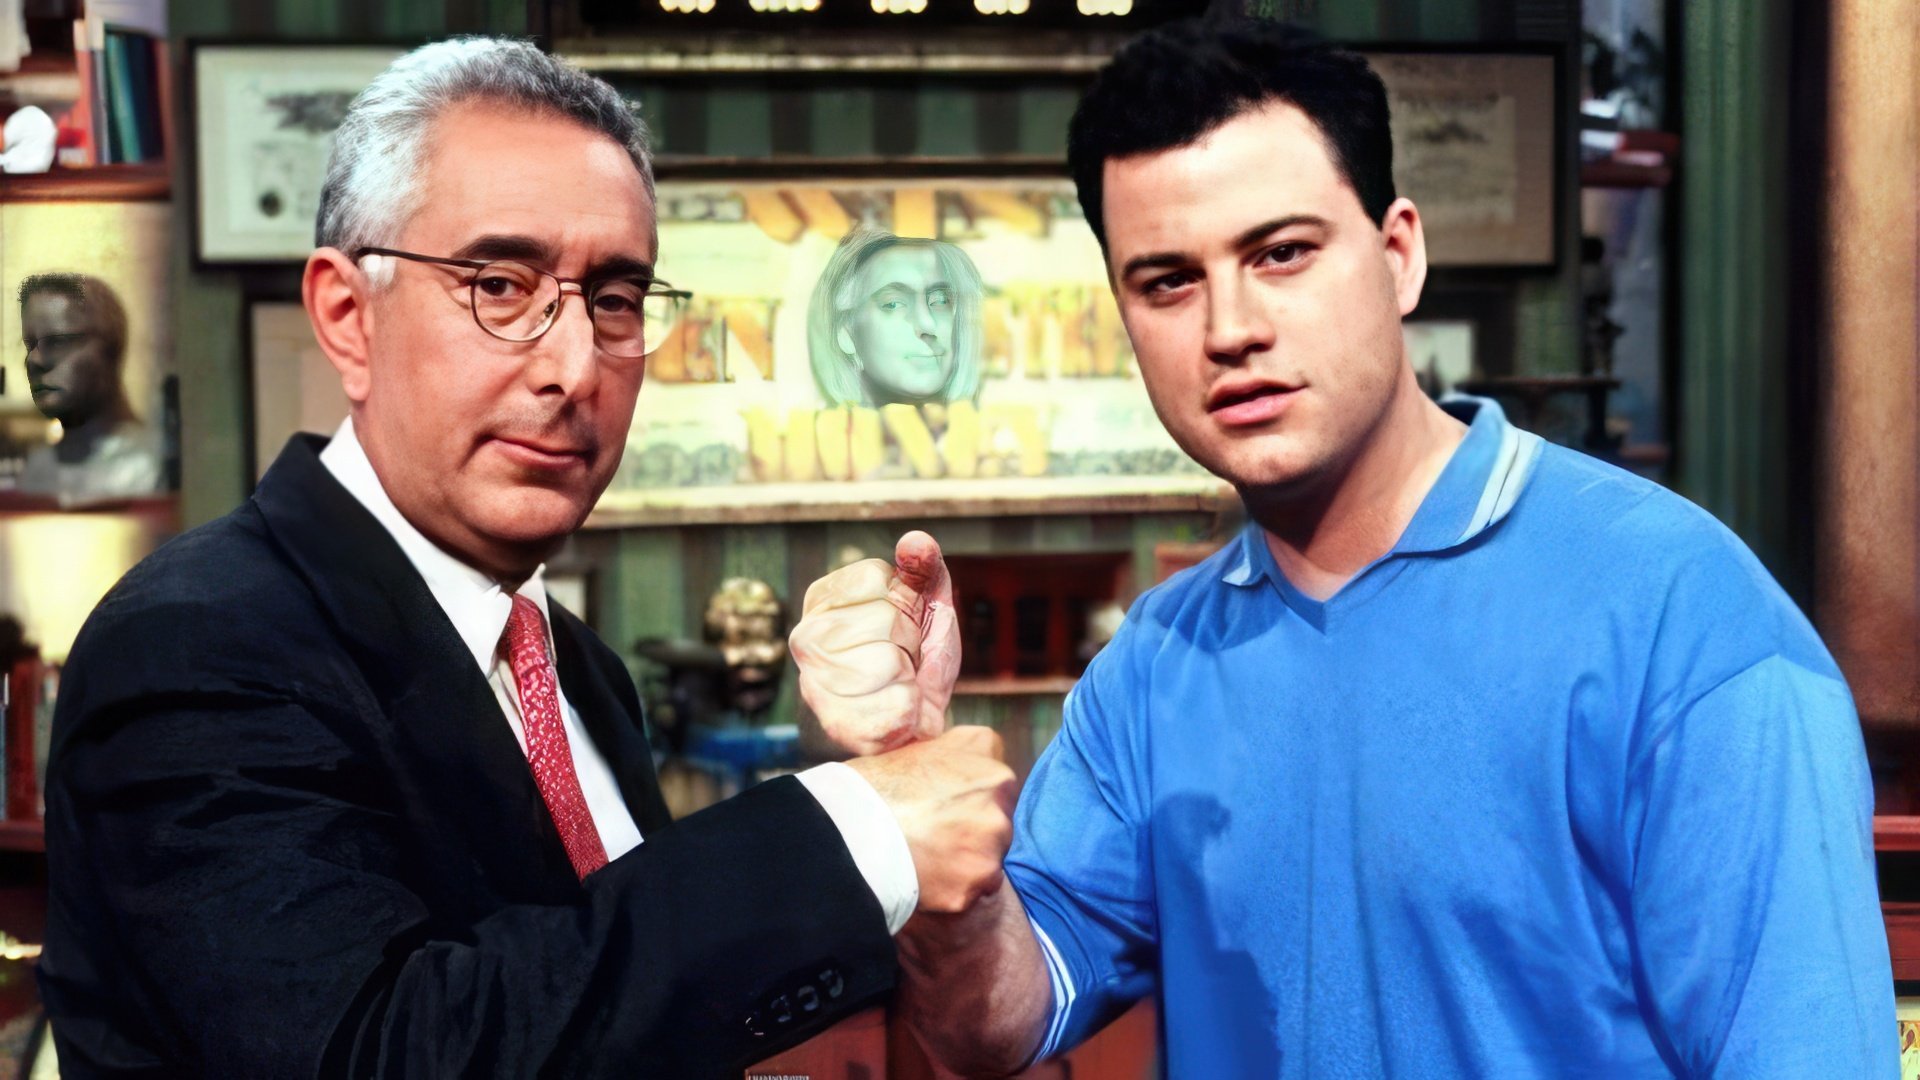 Jimmy Kimmel and Ben Stein in «Win Ben Stein’s Money» show